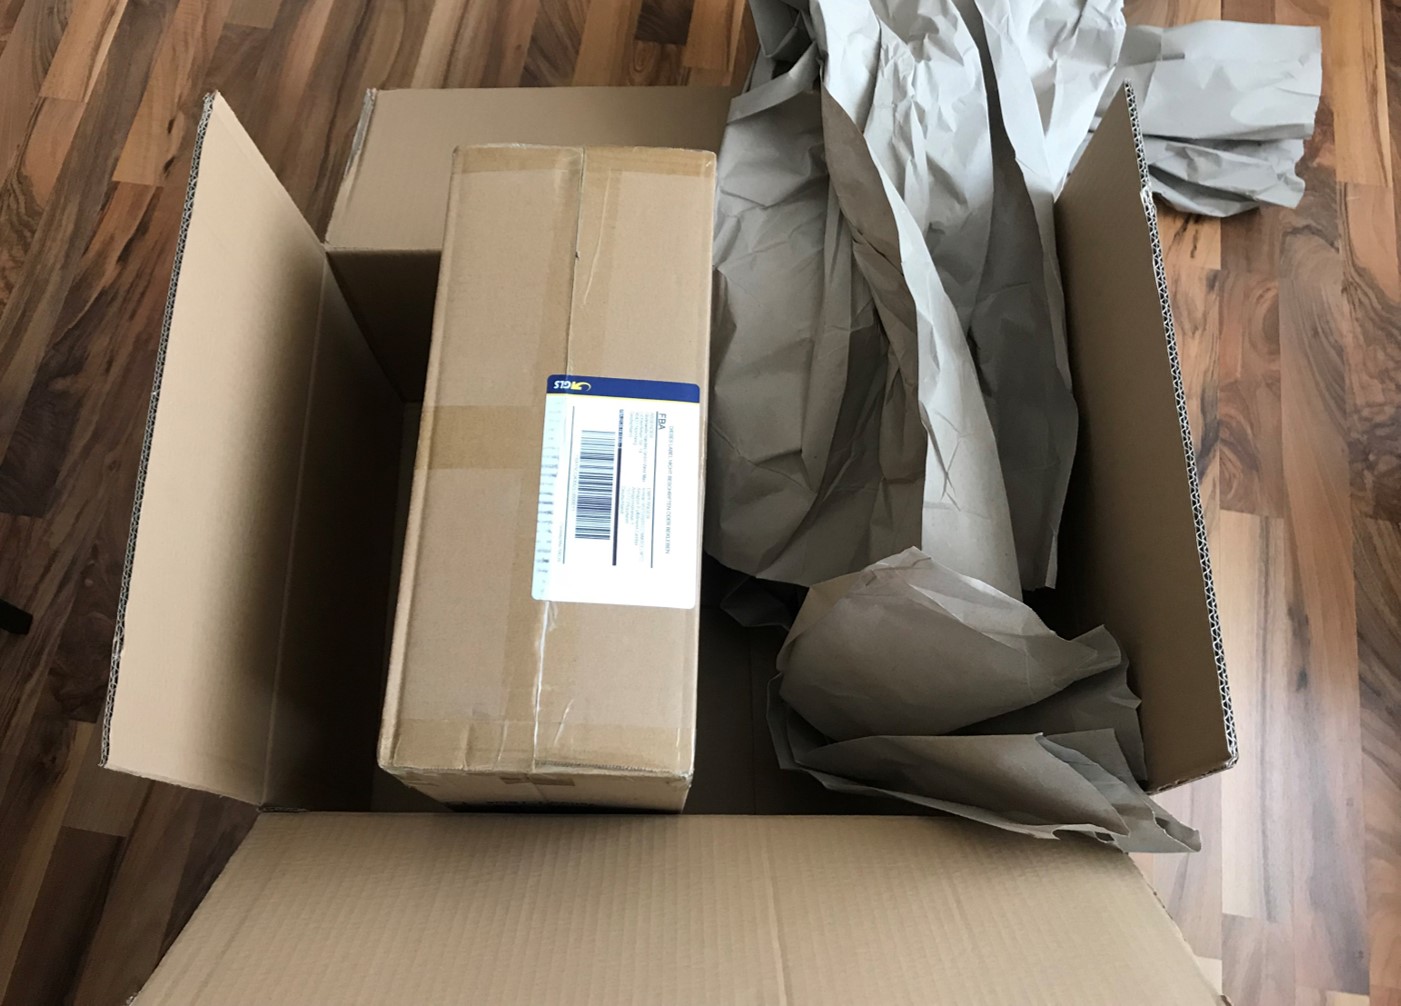 t3n.de: Wer zu große Kartons verwendet, wird von Amazon bestraft